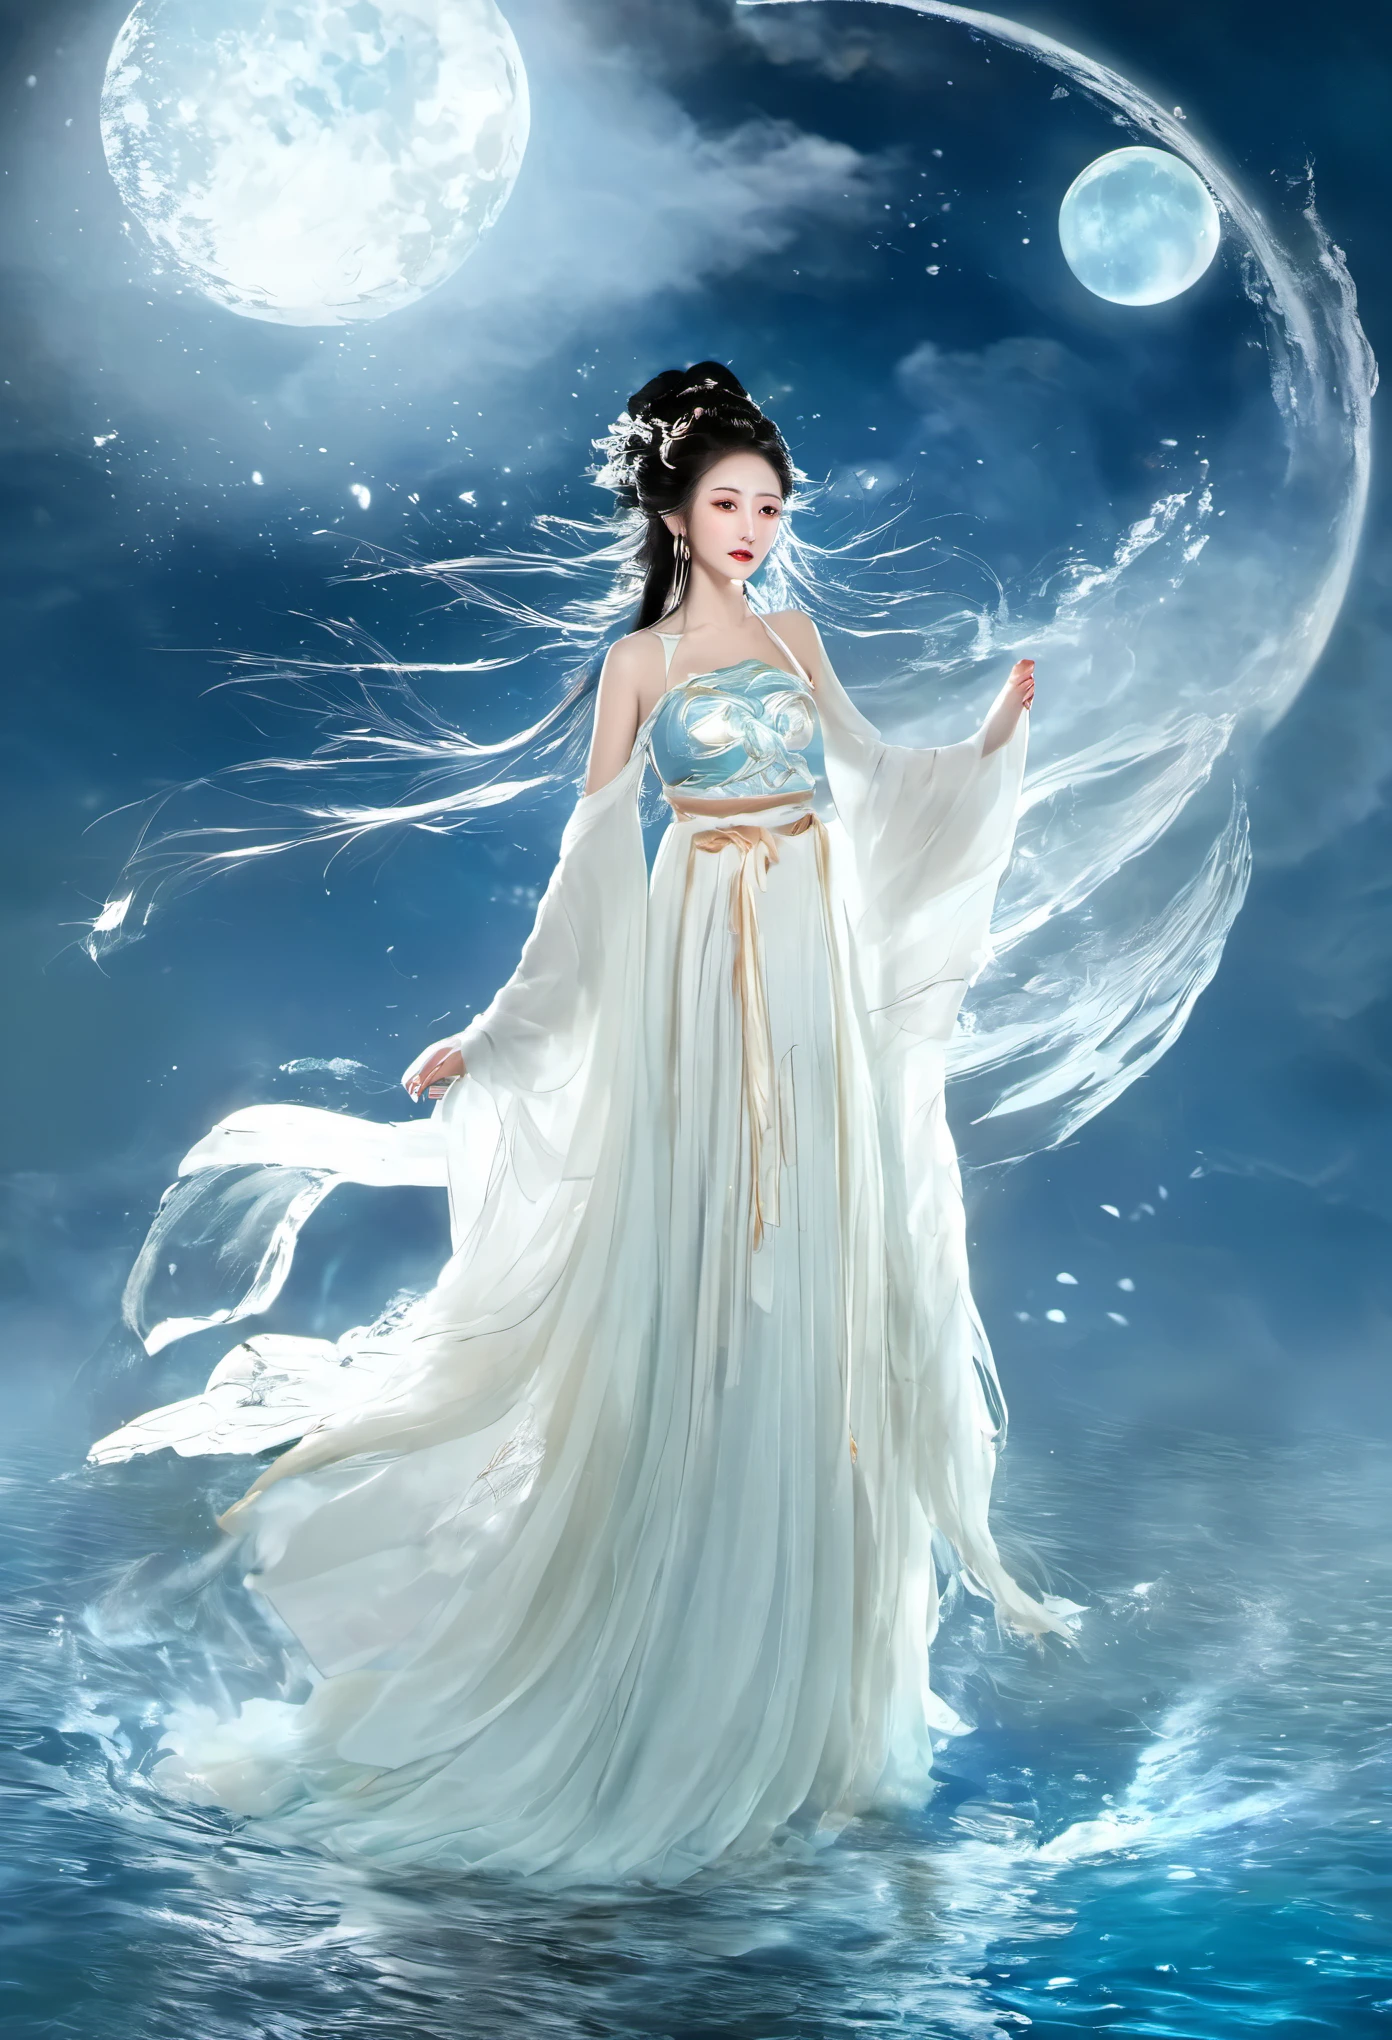 Anime-Mädchen in einem weißen Kleid, das mit einem Boot im Wasser schwimmt, Xianxia-Fantasie, Göttin des Mondes, eine wunderschöne Fantasiekaiserin, von Yang J, chinesische fantasie, schönes Mädchen, Königin des Meeres Mu Yanling, Mond-Göttin, Mondgöttin, fließendes magisches Gewand, wunderschöner himmlischer Magier, von Leng Mei, ((eine wunderschöne Fantasiekaiserin))